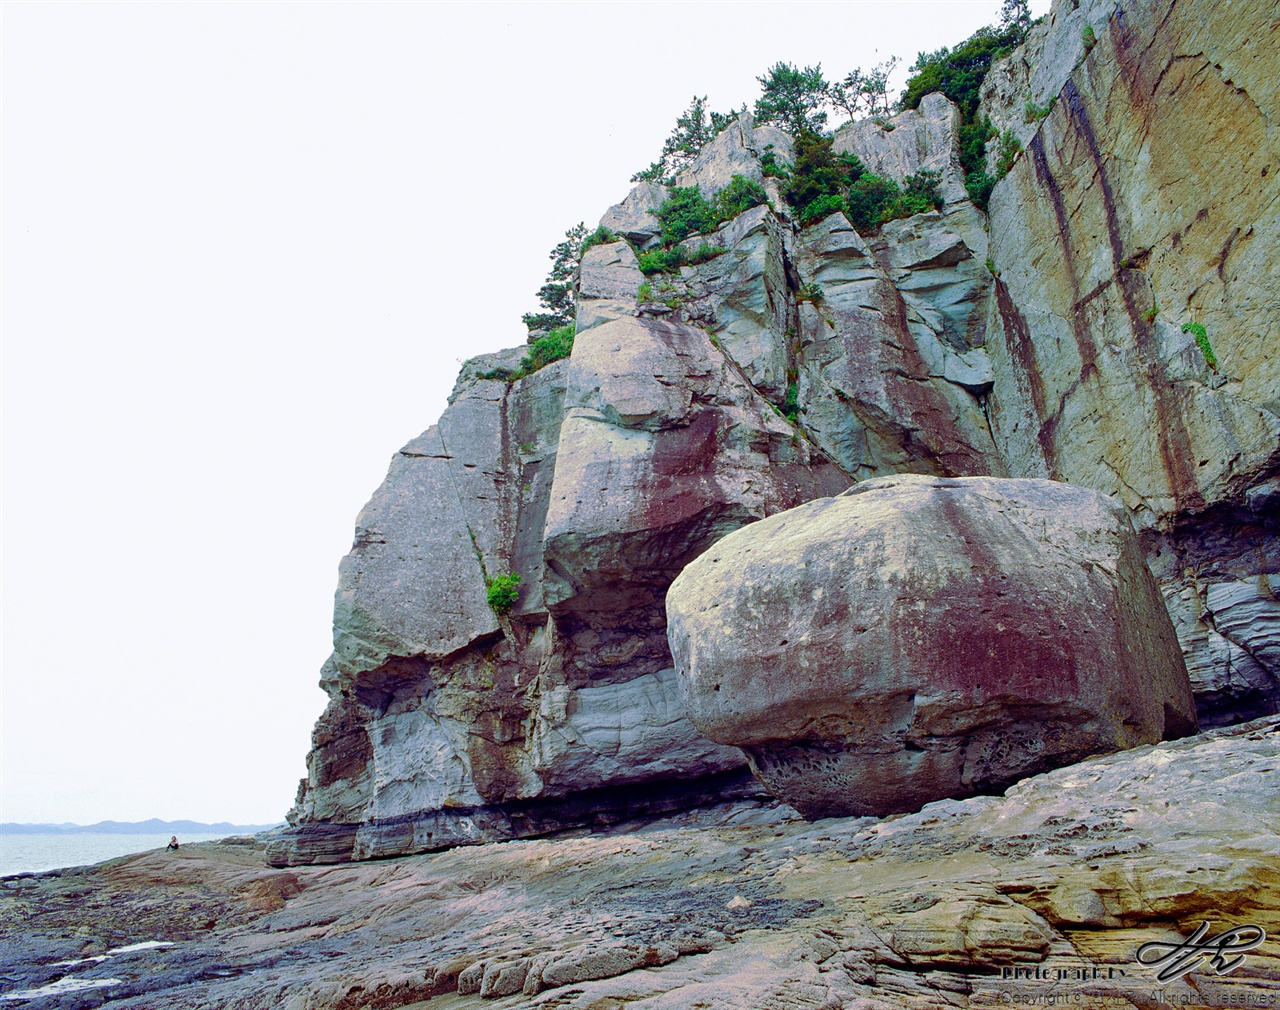 고래바위와 커다란 바위산이 보인다. 옆에 앉아있는 사람의 크기로 대충 규모를 미루어 짐작할 수 있을 것이다.